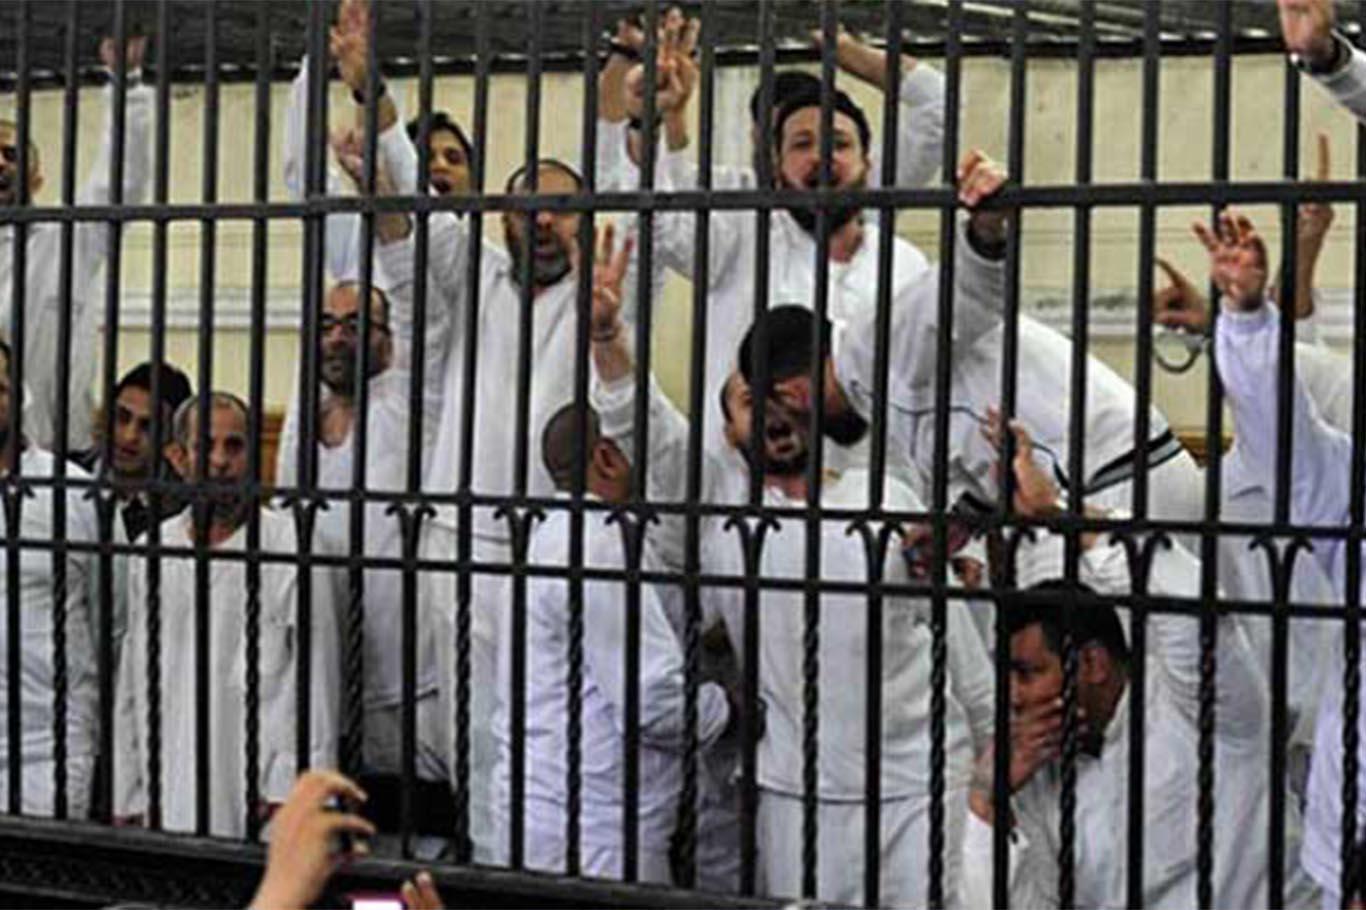  Mısır'da darbeden sonra yaklaşık 3 bin kişiye idam cezası verildi